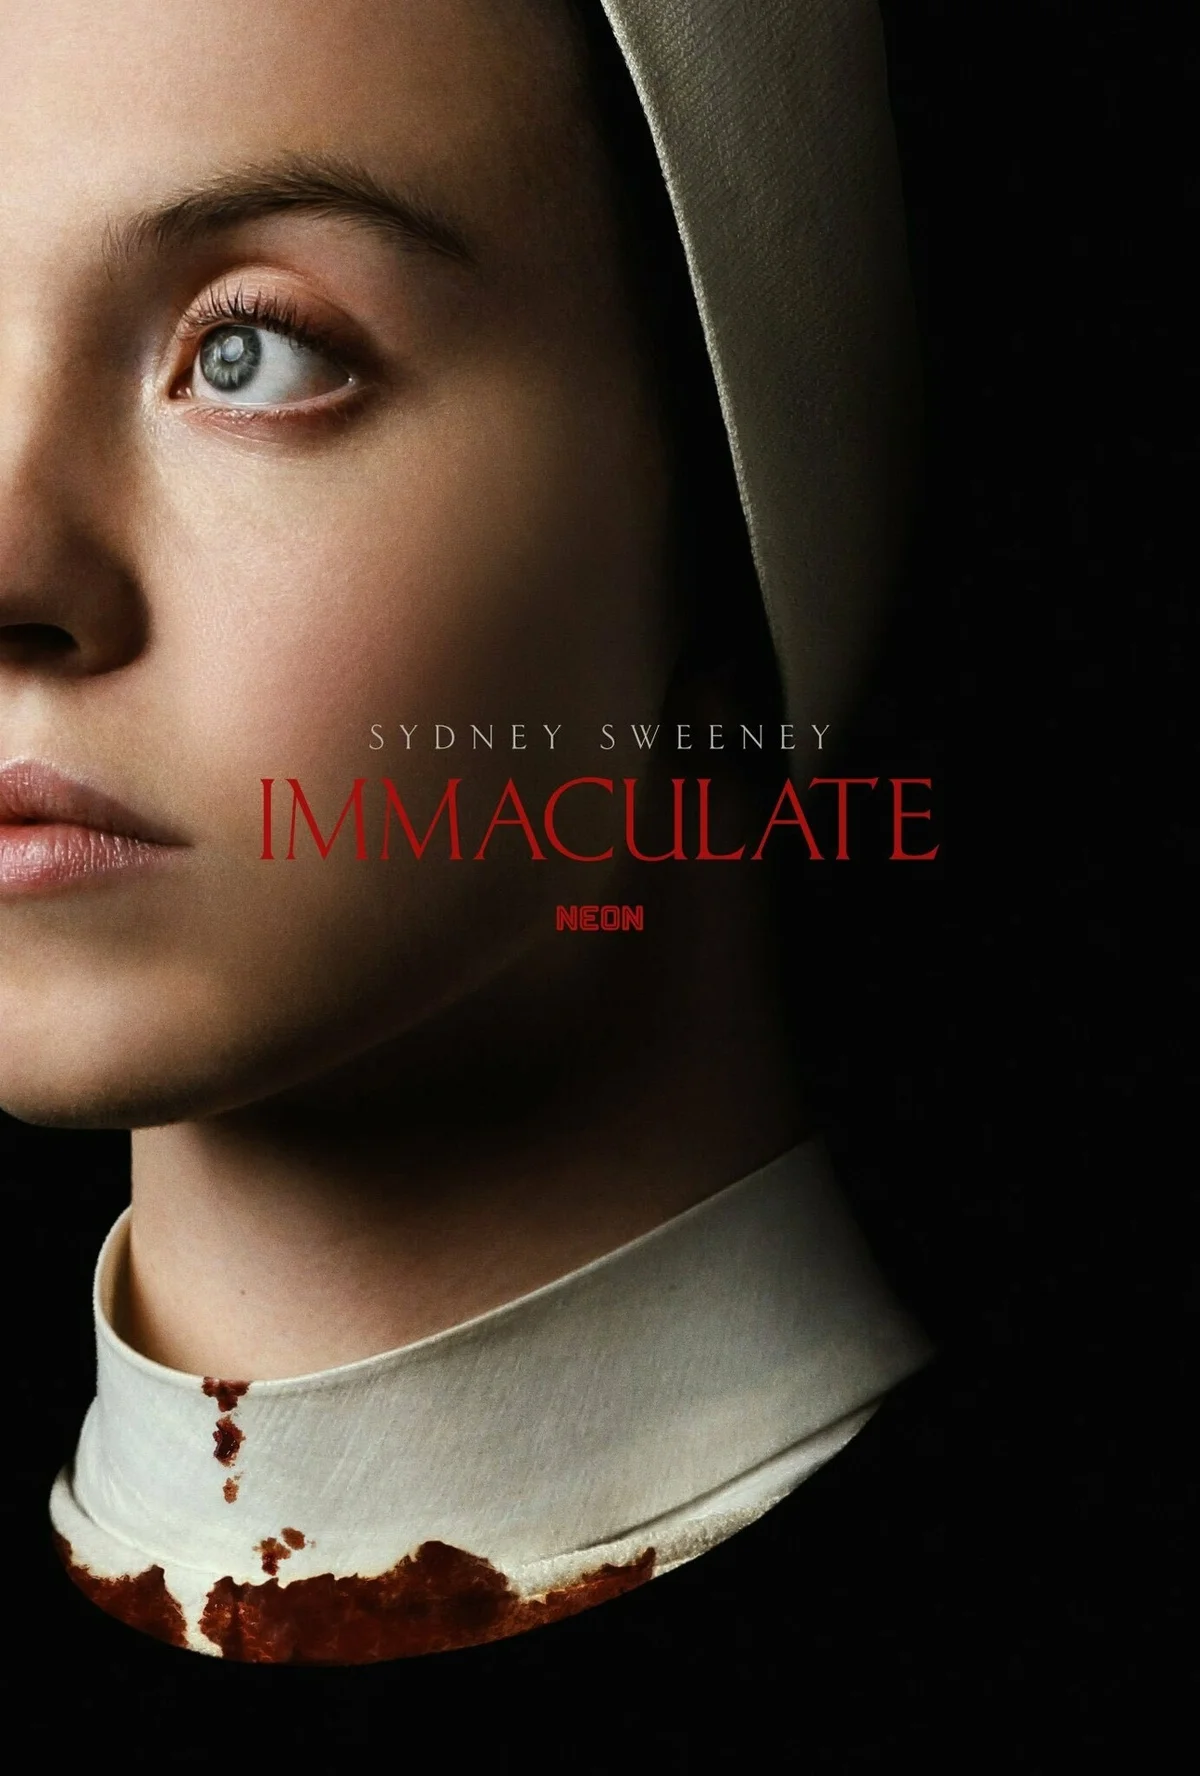 Появился первый постер хоррора Immaculate c Сидни Суини в главной роли - фото 1